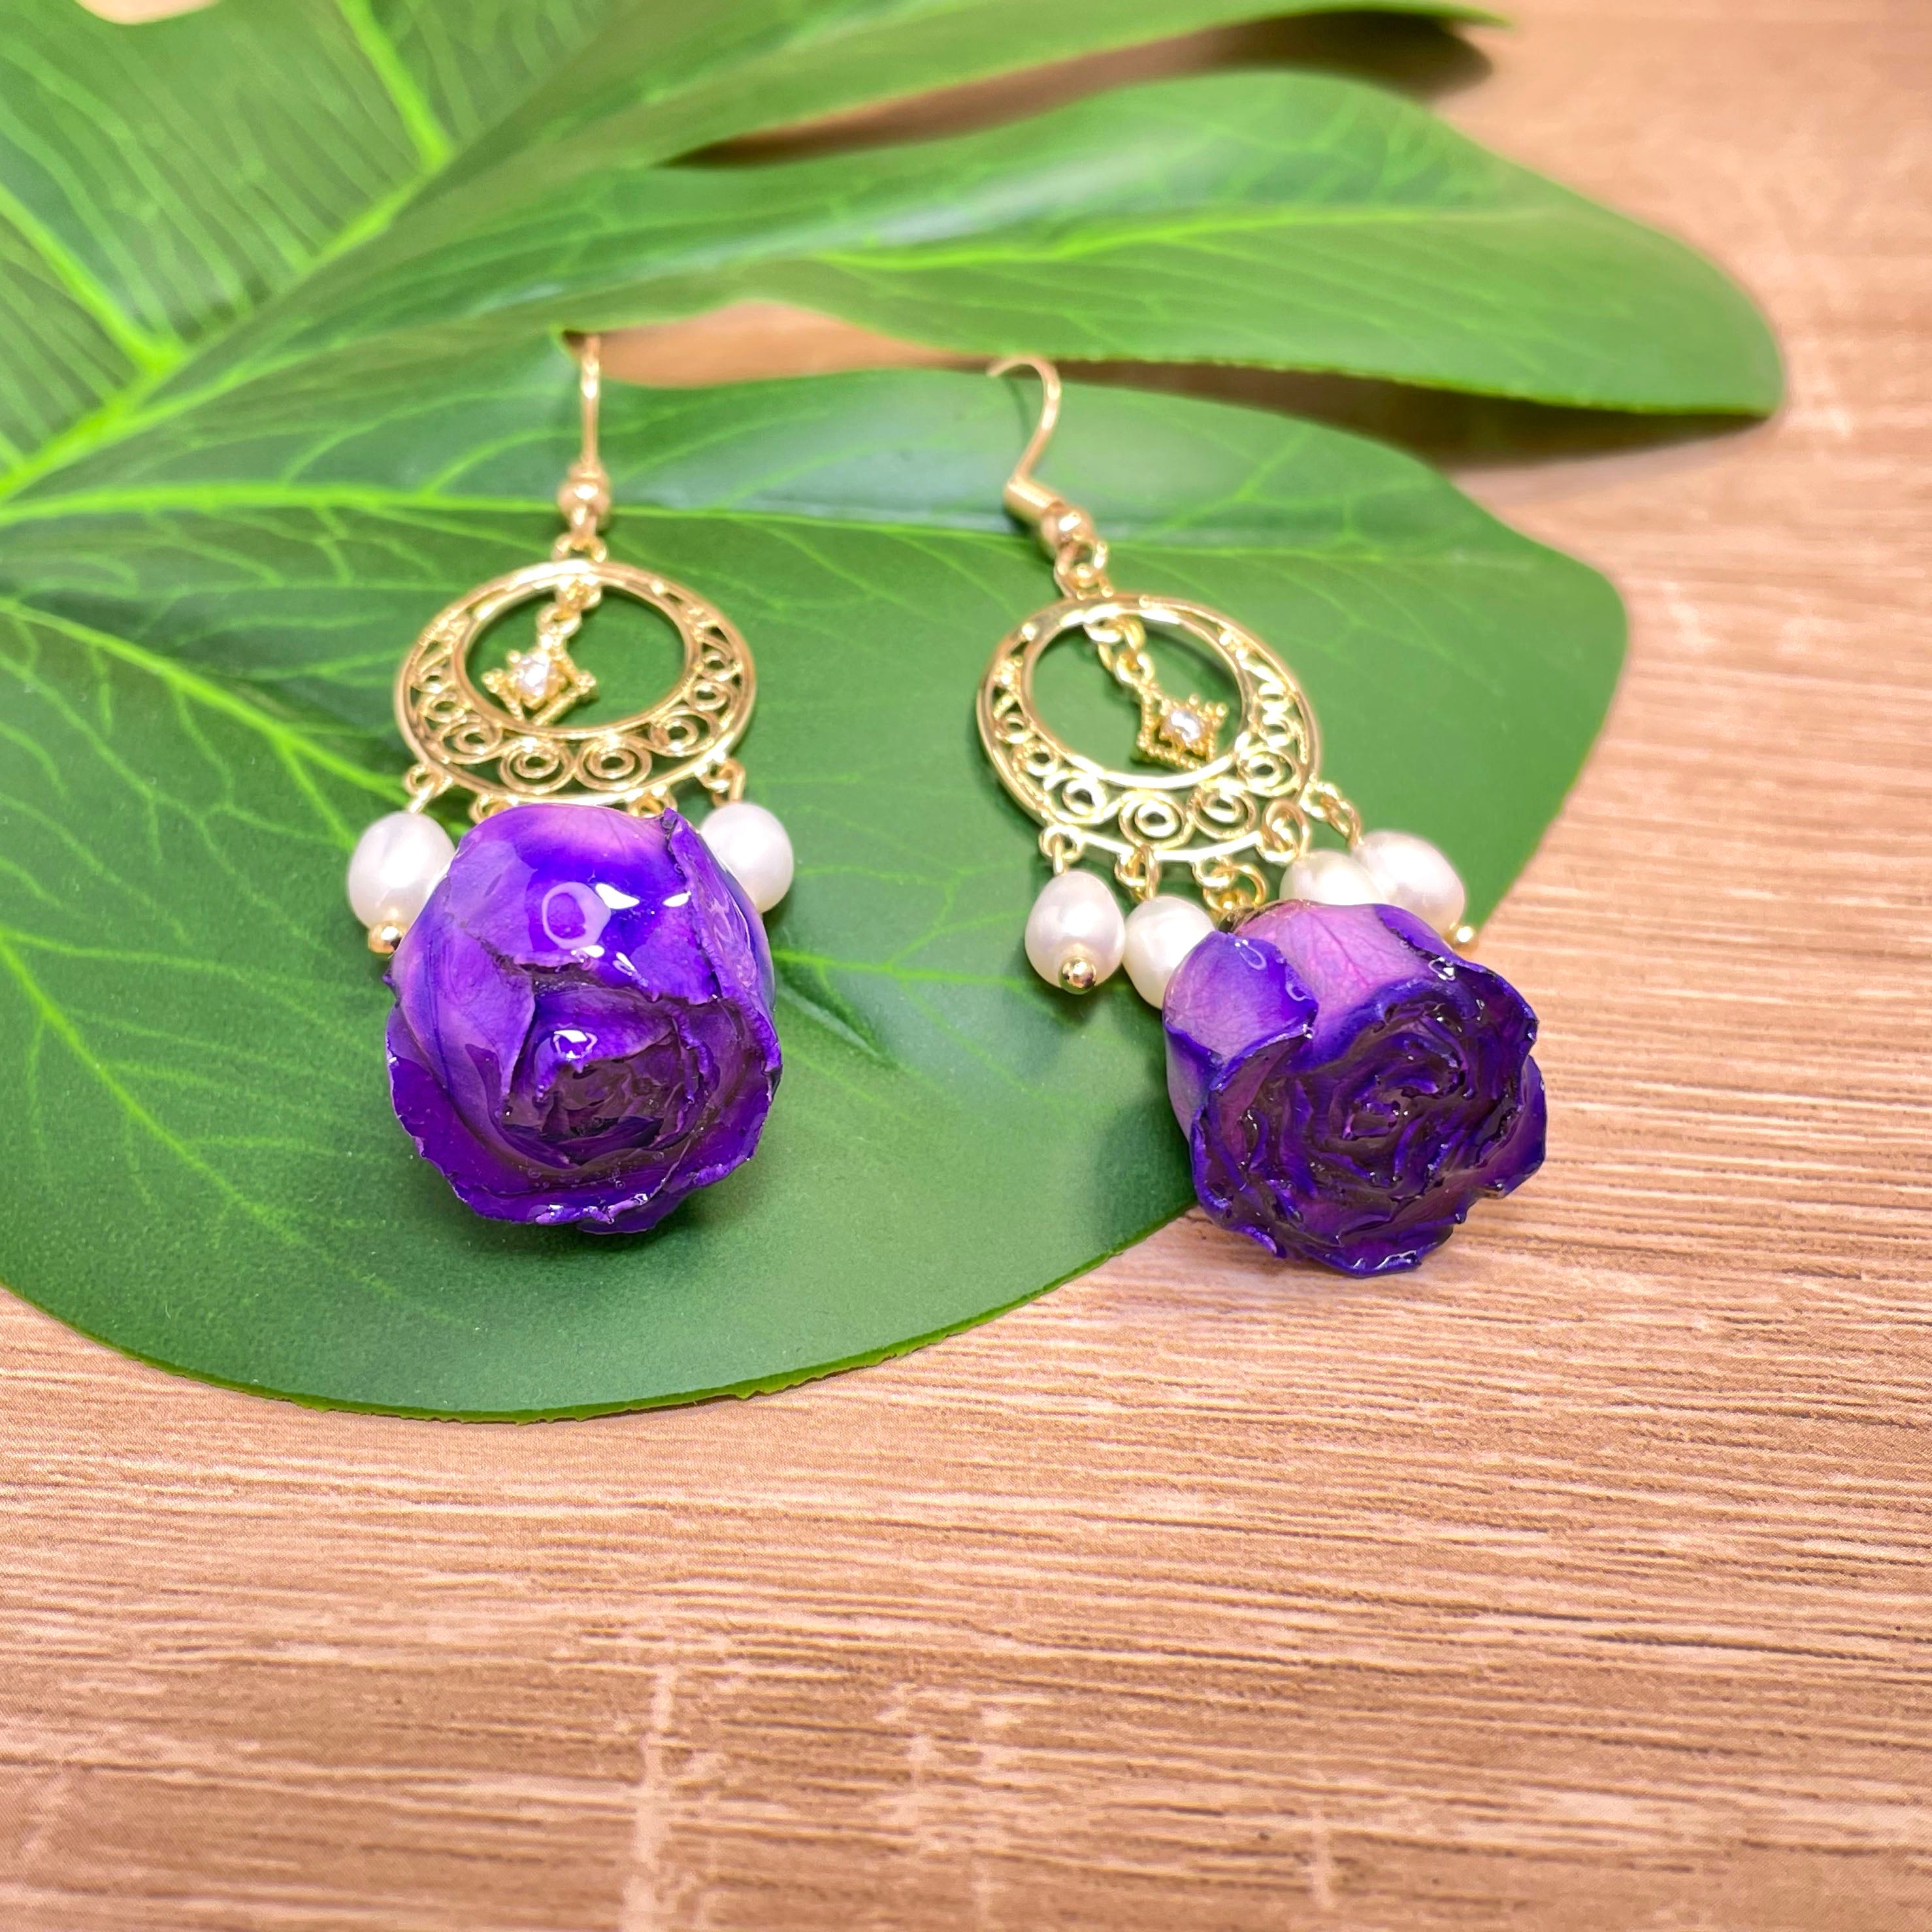 Dangle Earrings with Purple Flower